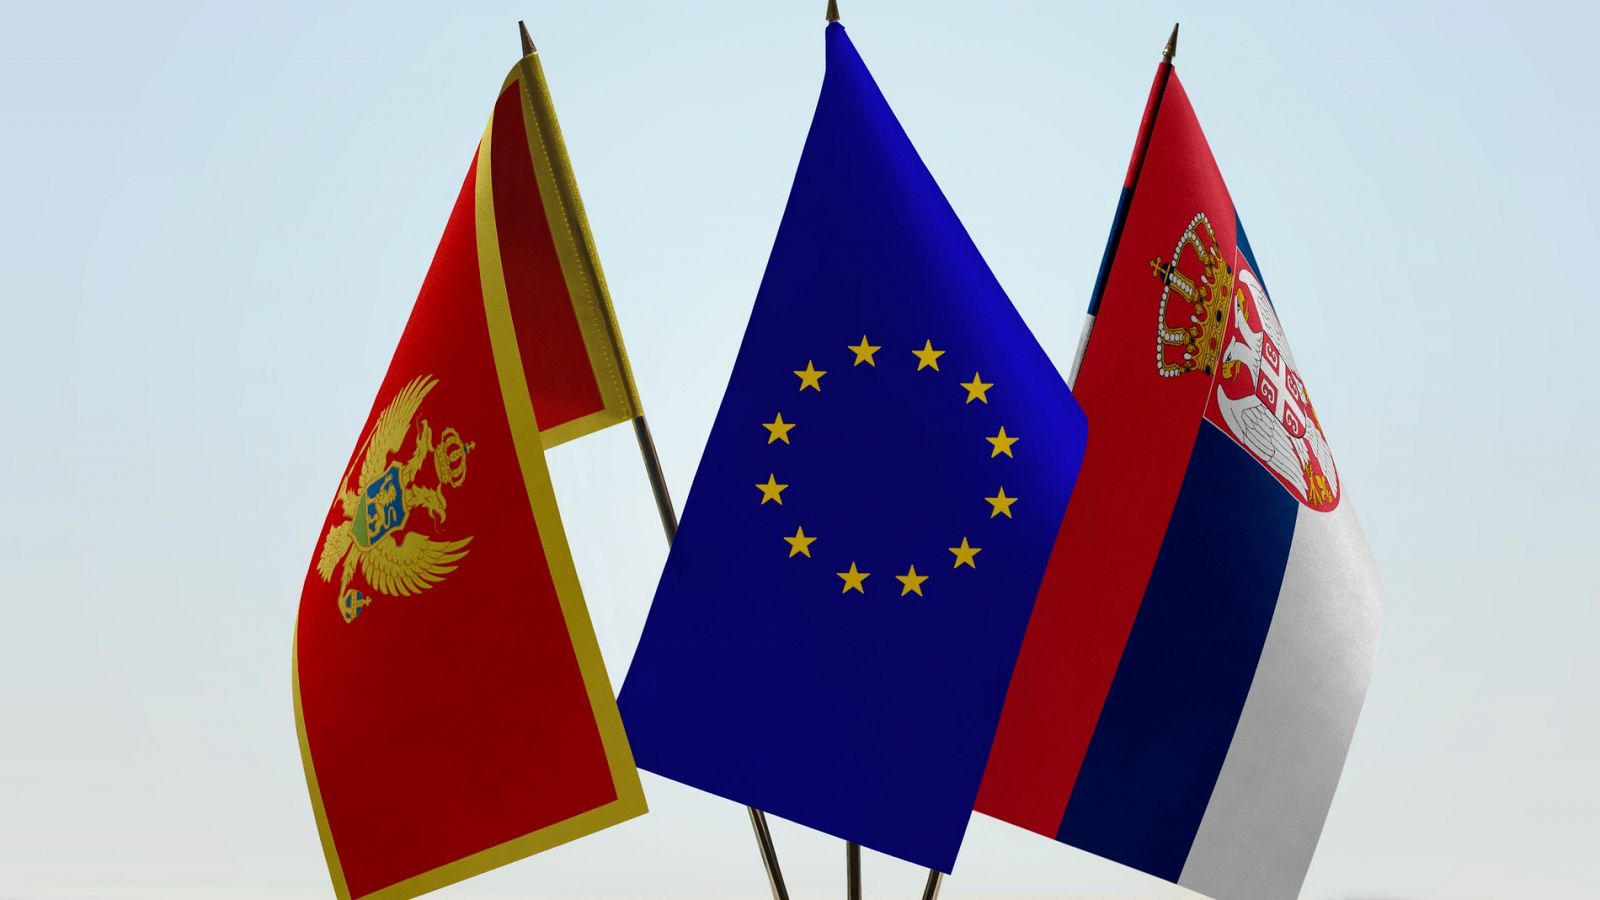 Banderas de Montenegro, la Unión Europea y Serbia